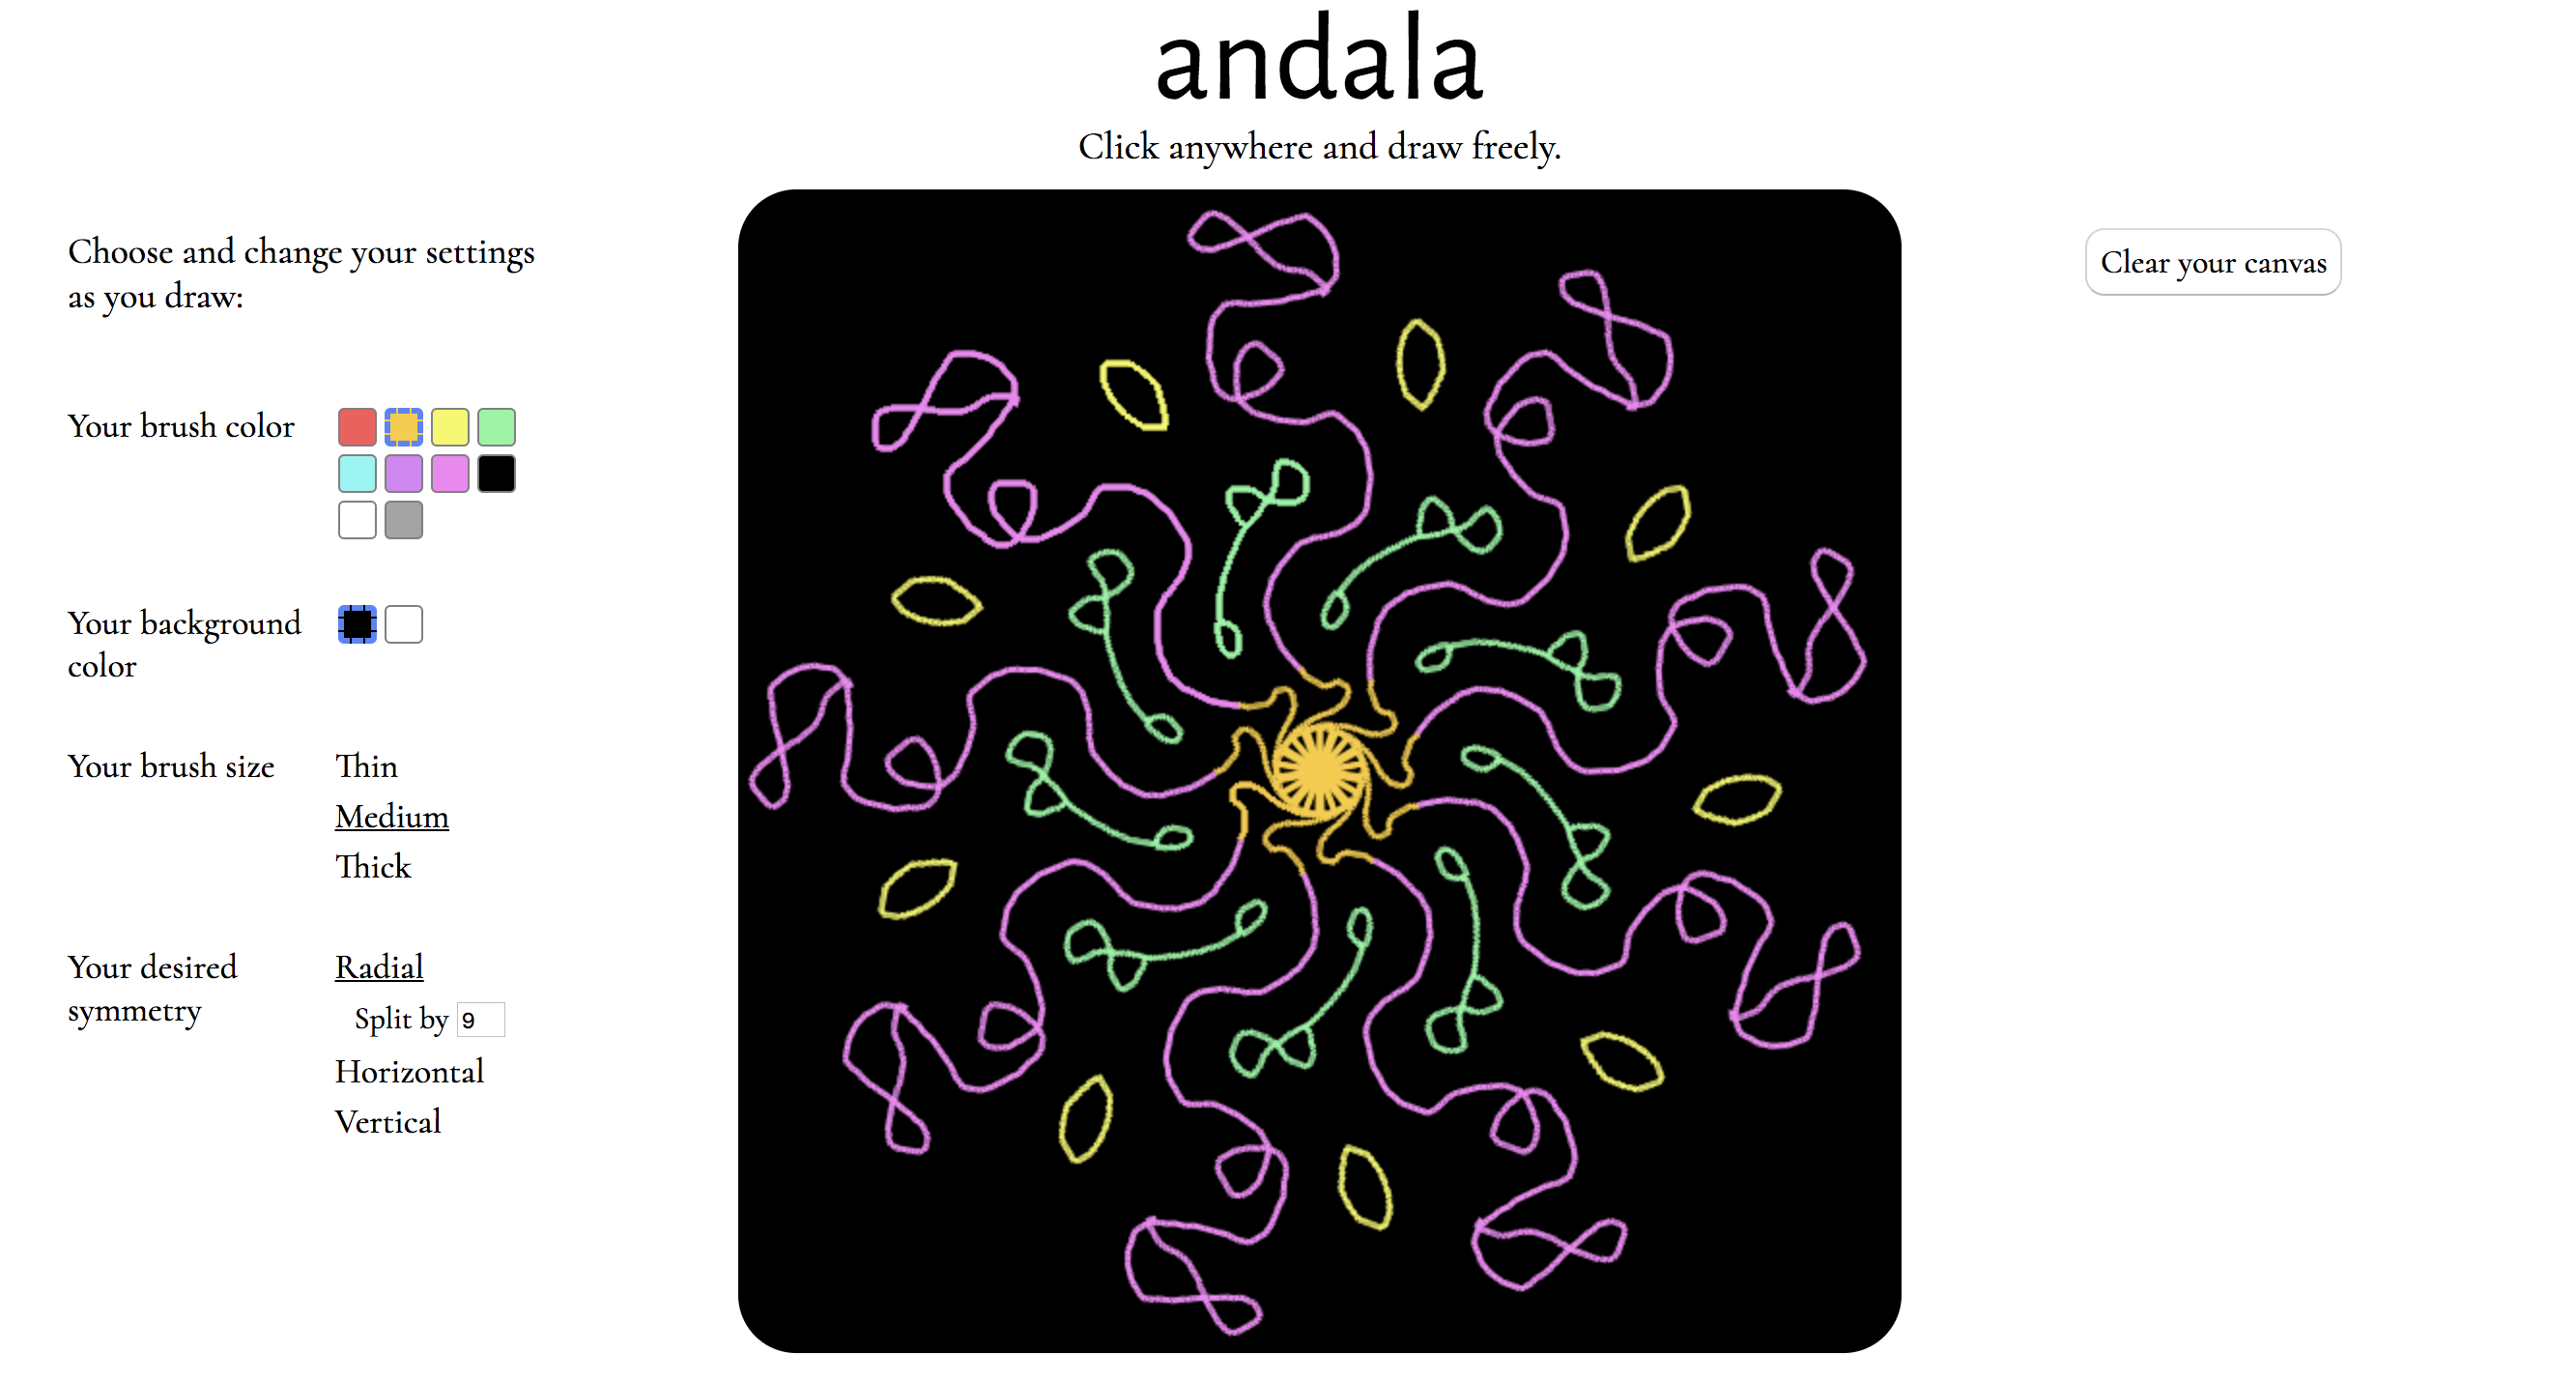 andala-drawing-example